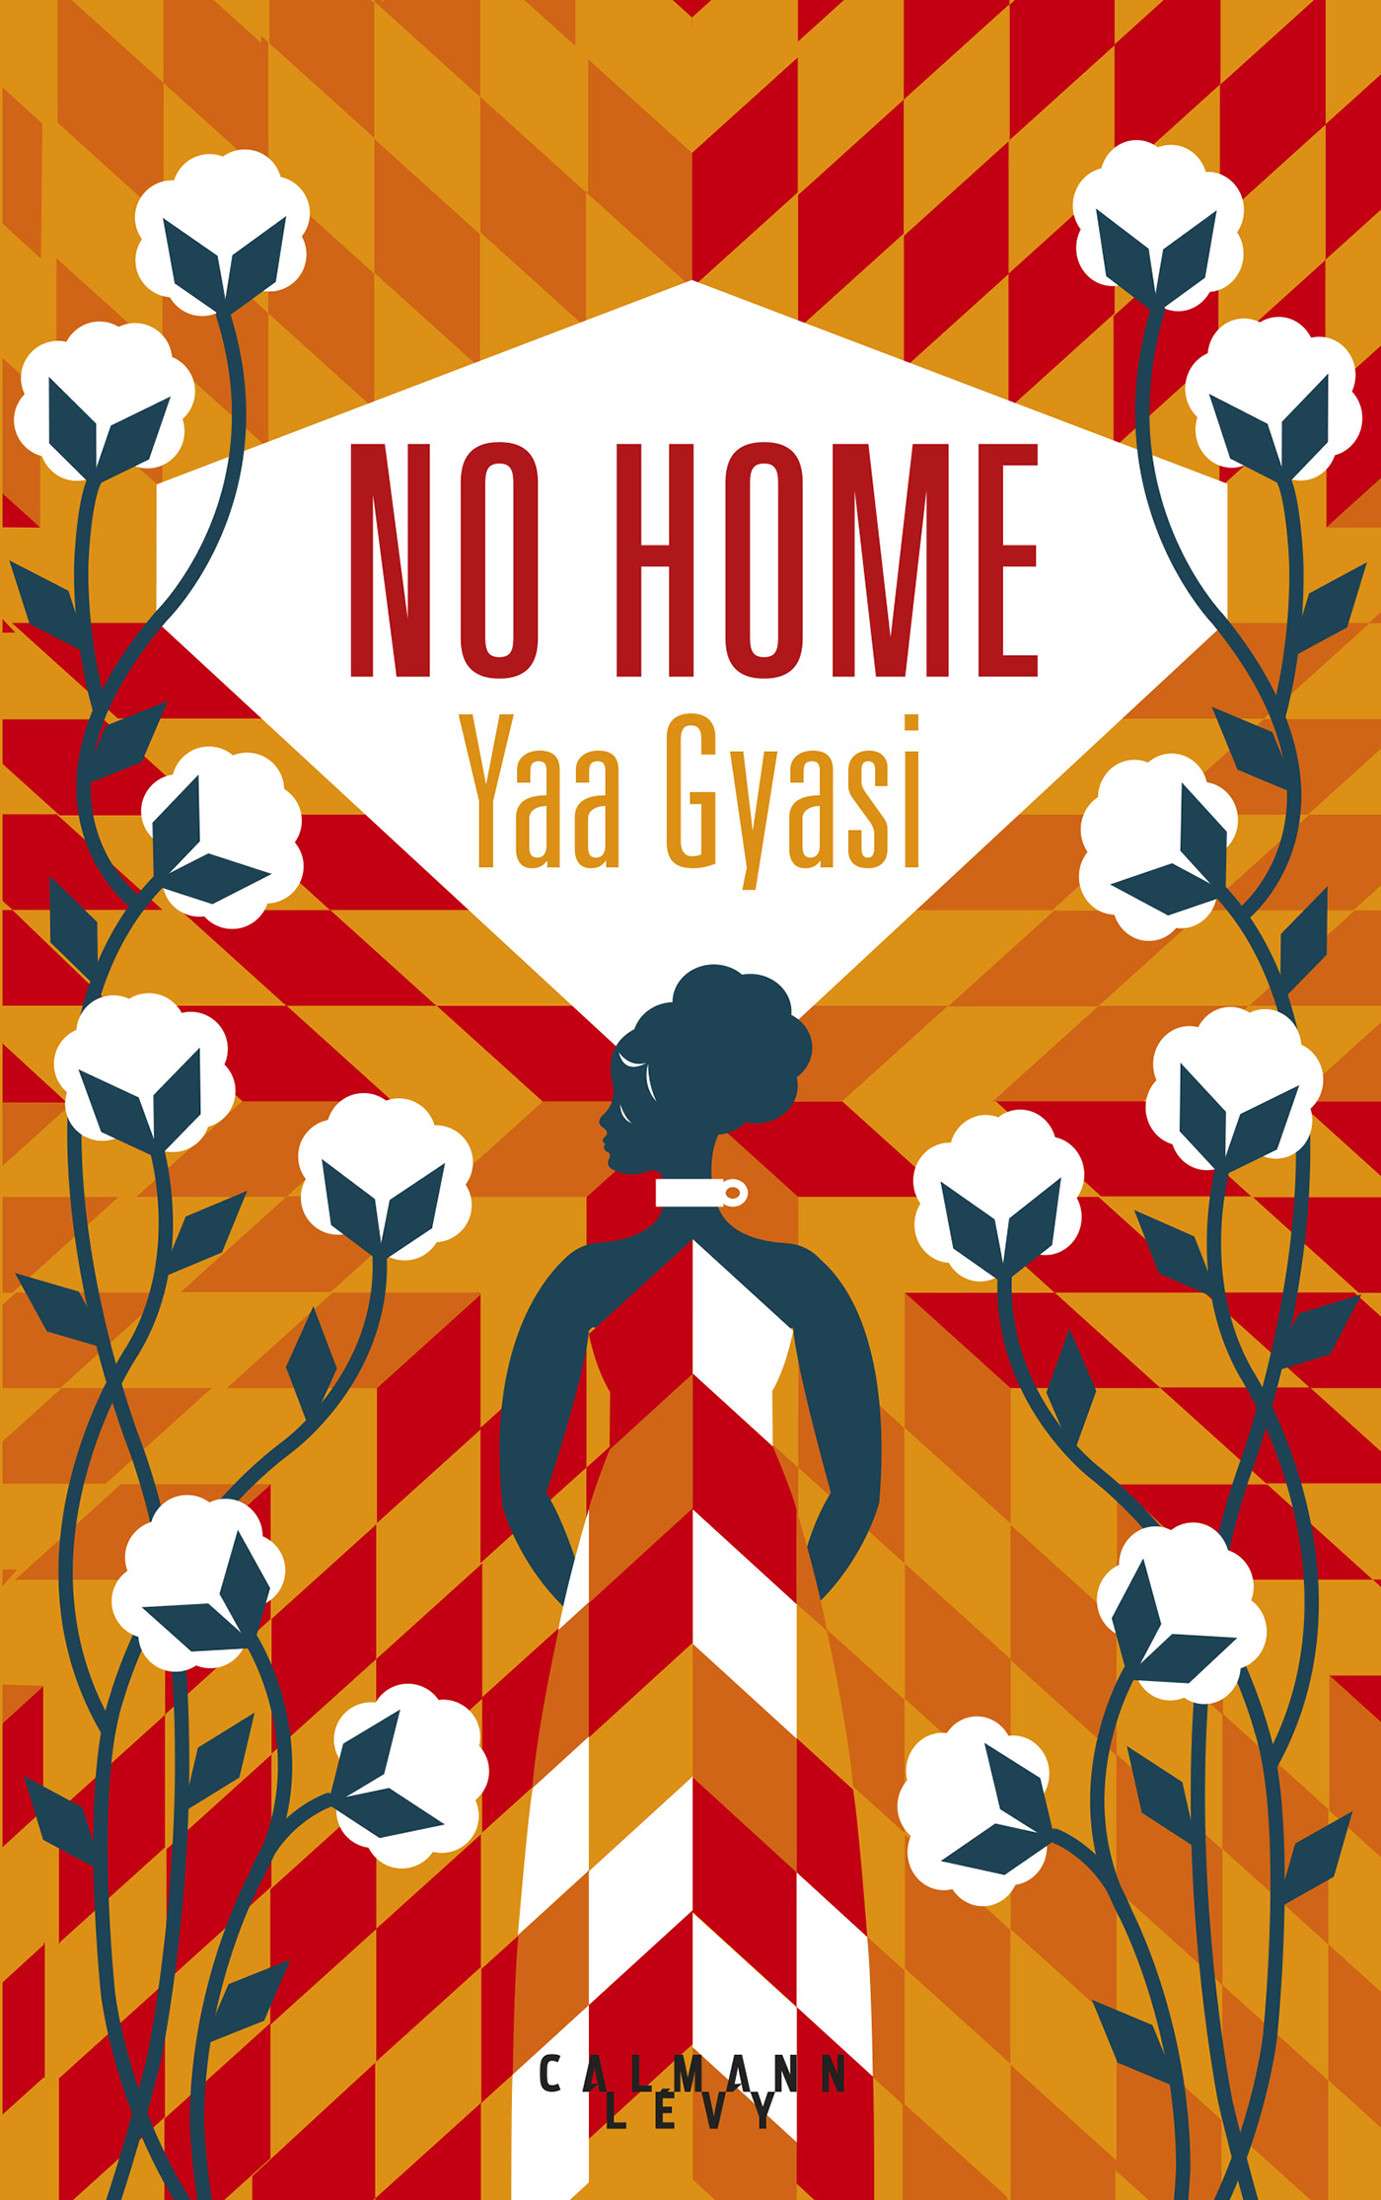 No Home - Yaa Gyasi